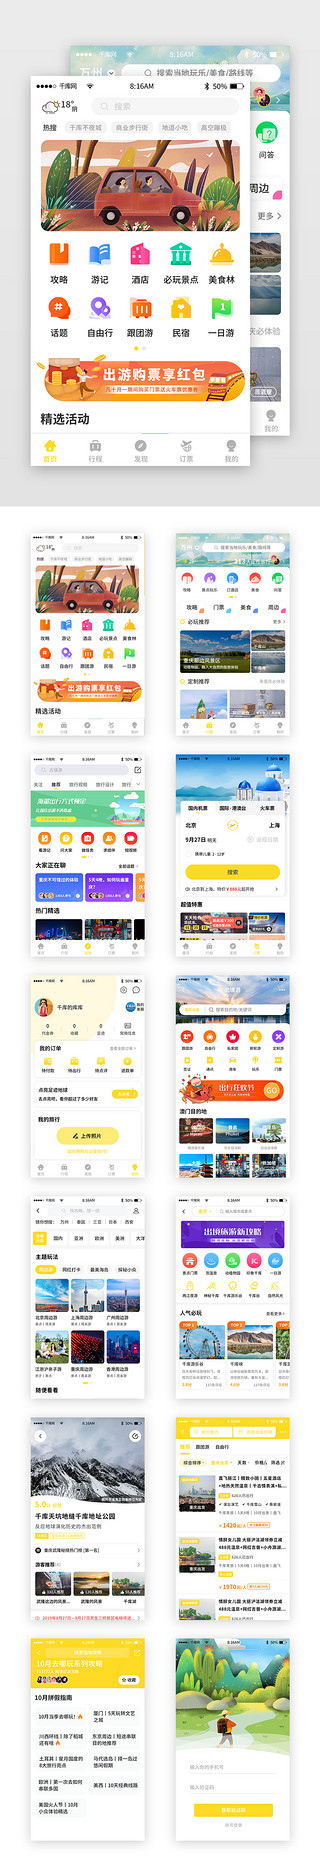 毕业旅行社促销UI设计素材_黄色简约旅游旅行app套图